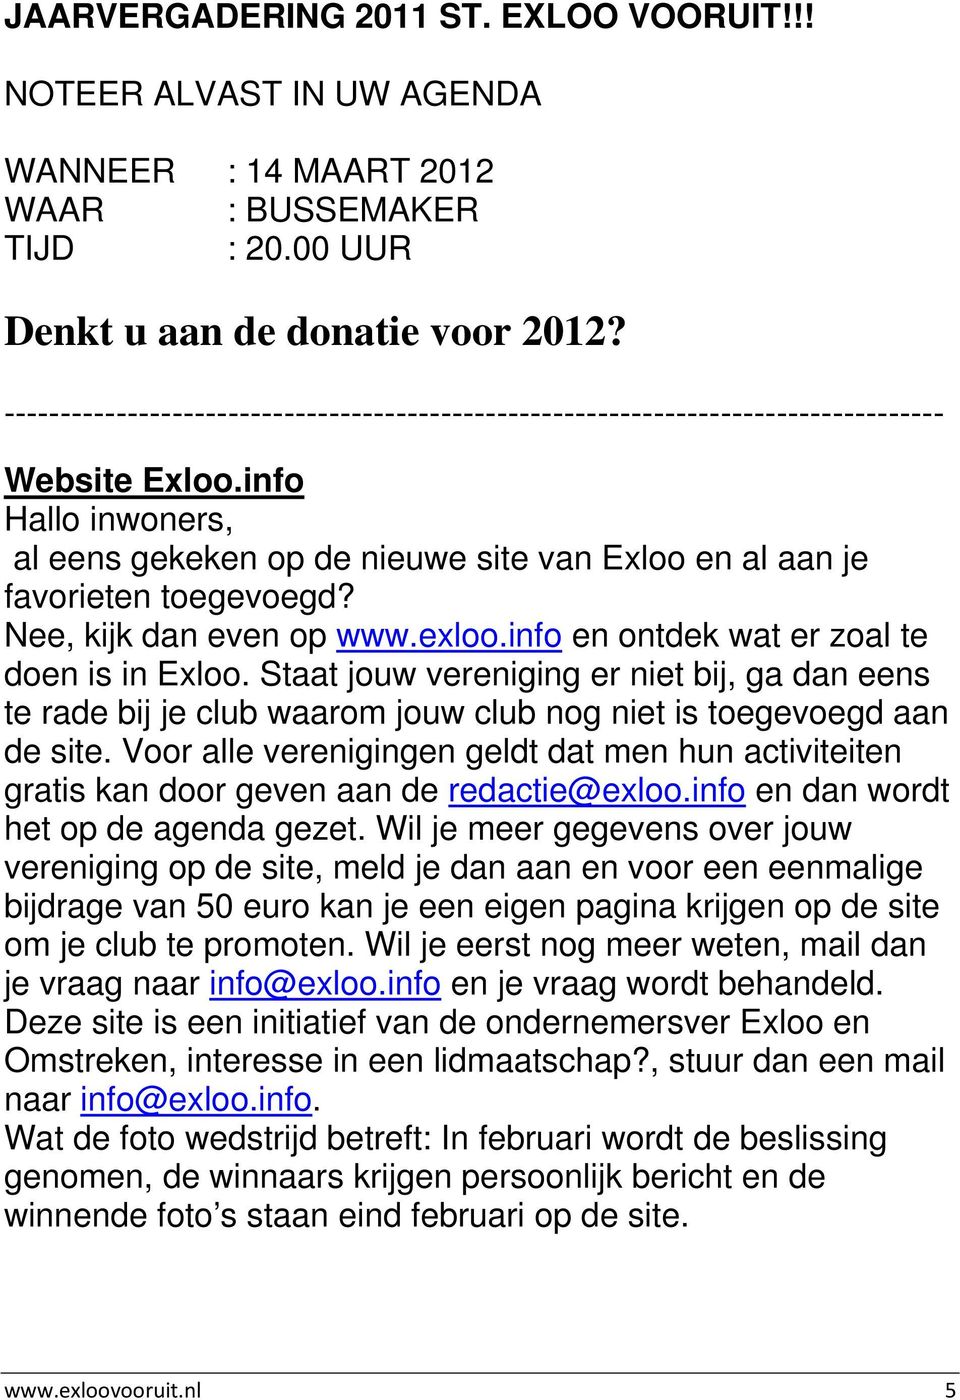 Nee, kijk dan even op www.exloo.info en ontdek wat er zoal te doen is in Exloo. Staat jouw vereniging er niet bij, ga dan eens te rade bij je club waarom jouw club nog niet is toegevoegd aan de site.